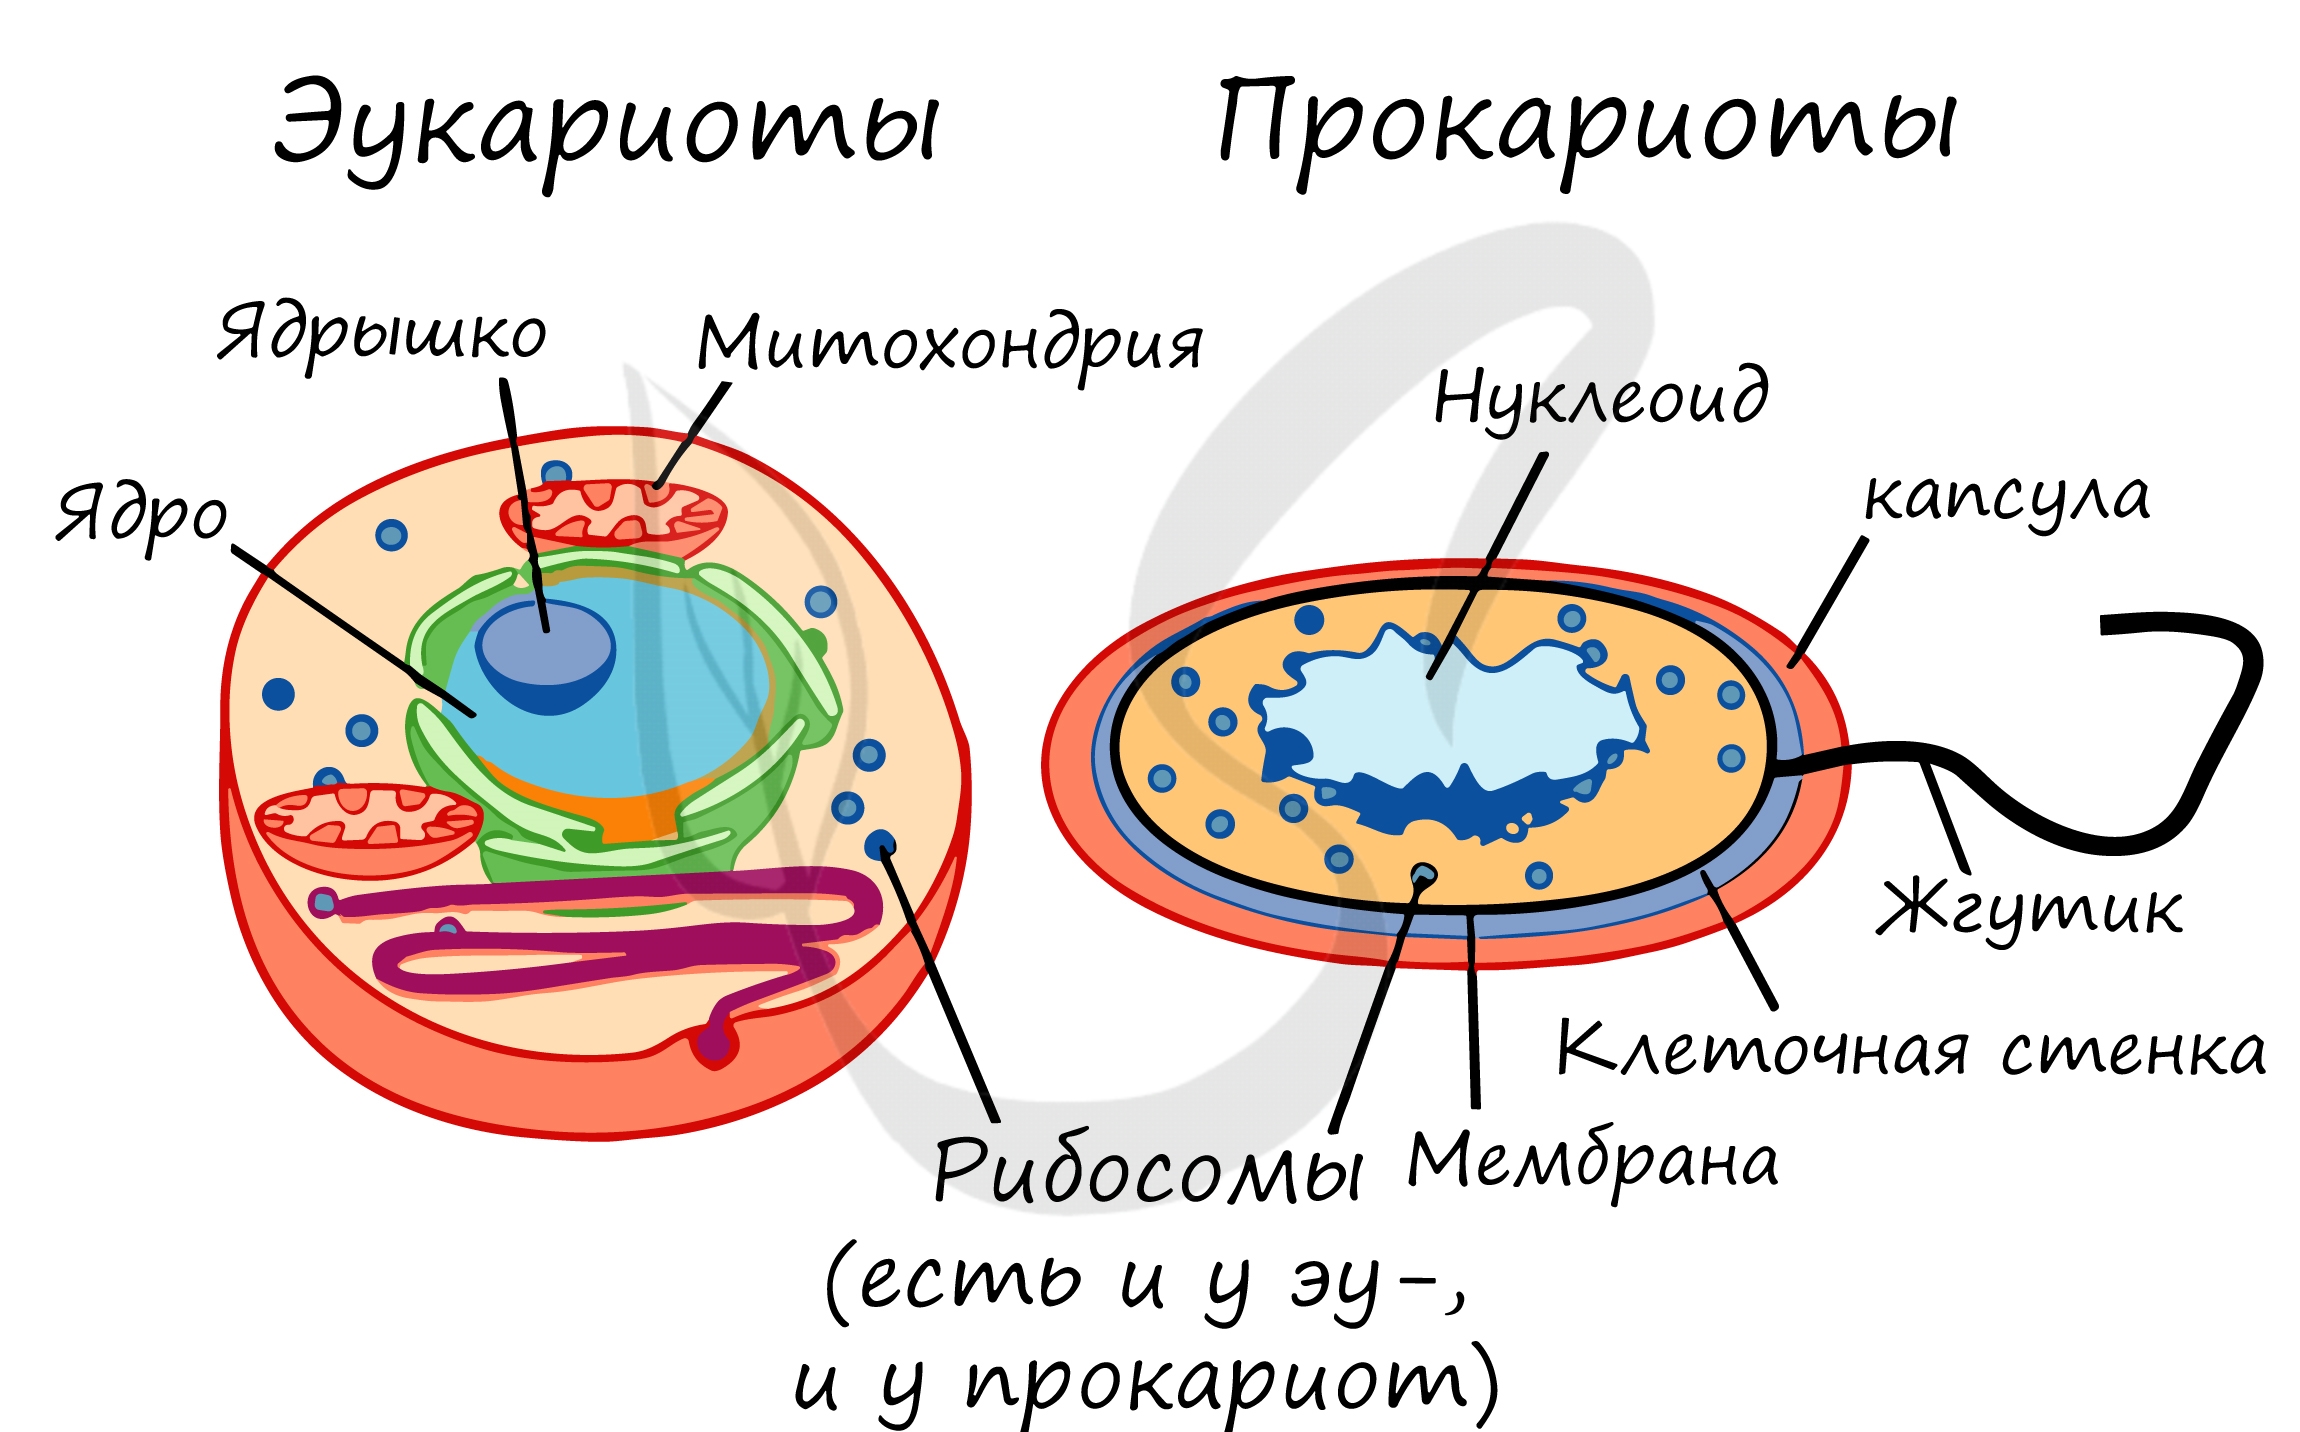 Строение клетки прокариот и эукариот. Строение бактерий прокариоты и эукариоты. Отличие прокариот от эукариот рисунок. Прокариотическая клетка и эукариотическая клетка строение.